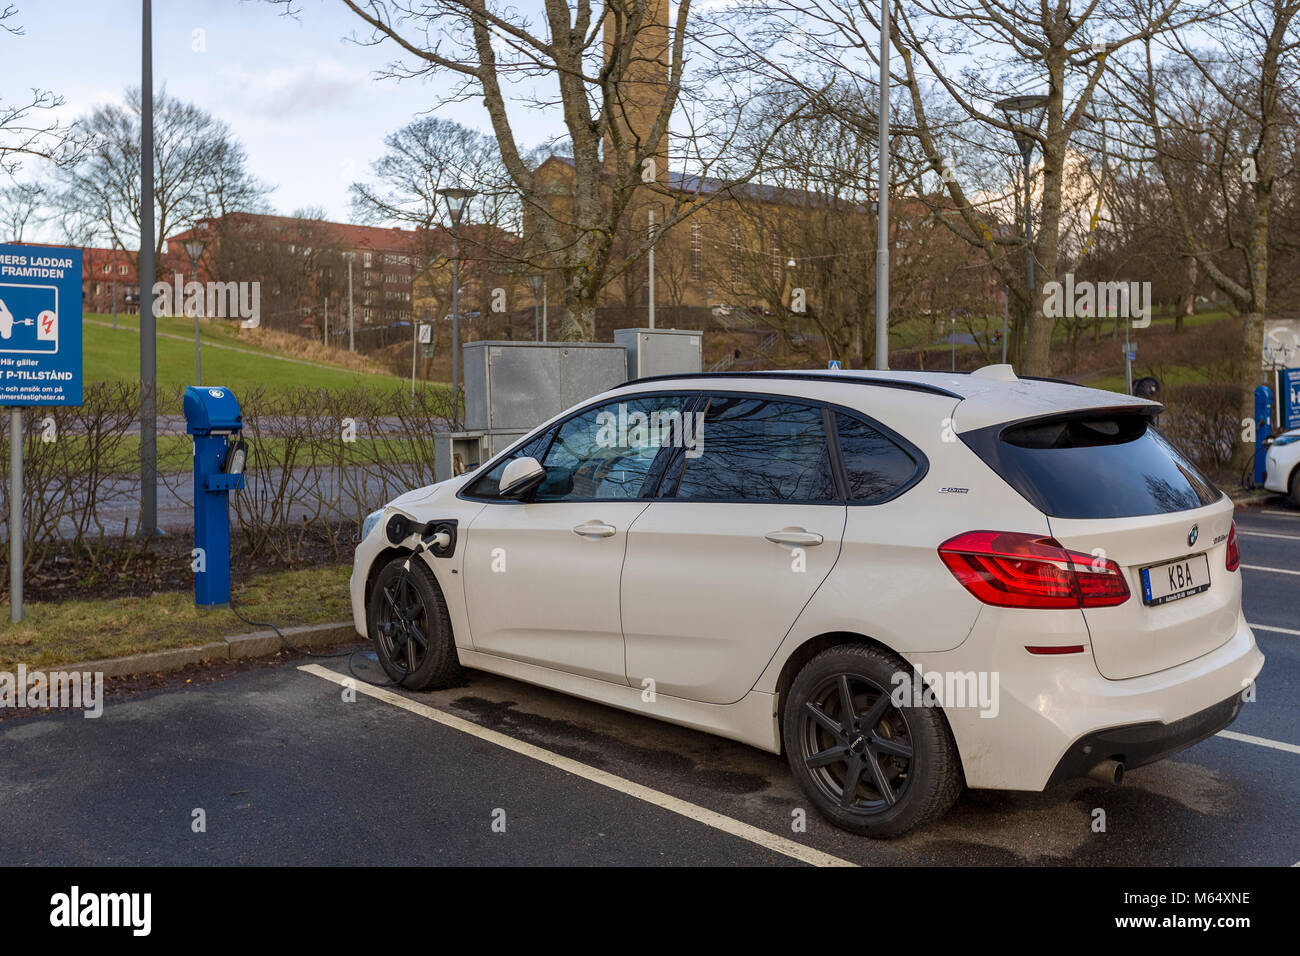 Göteborg, Schweden - 27. JANUAR 2018: Elektrische BMW Auto in die Ladestation gesteckt, Universität Chalmers, Göteborg, Schweden Model Release: Nein Property Release: Nein. Stockfoto